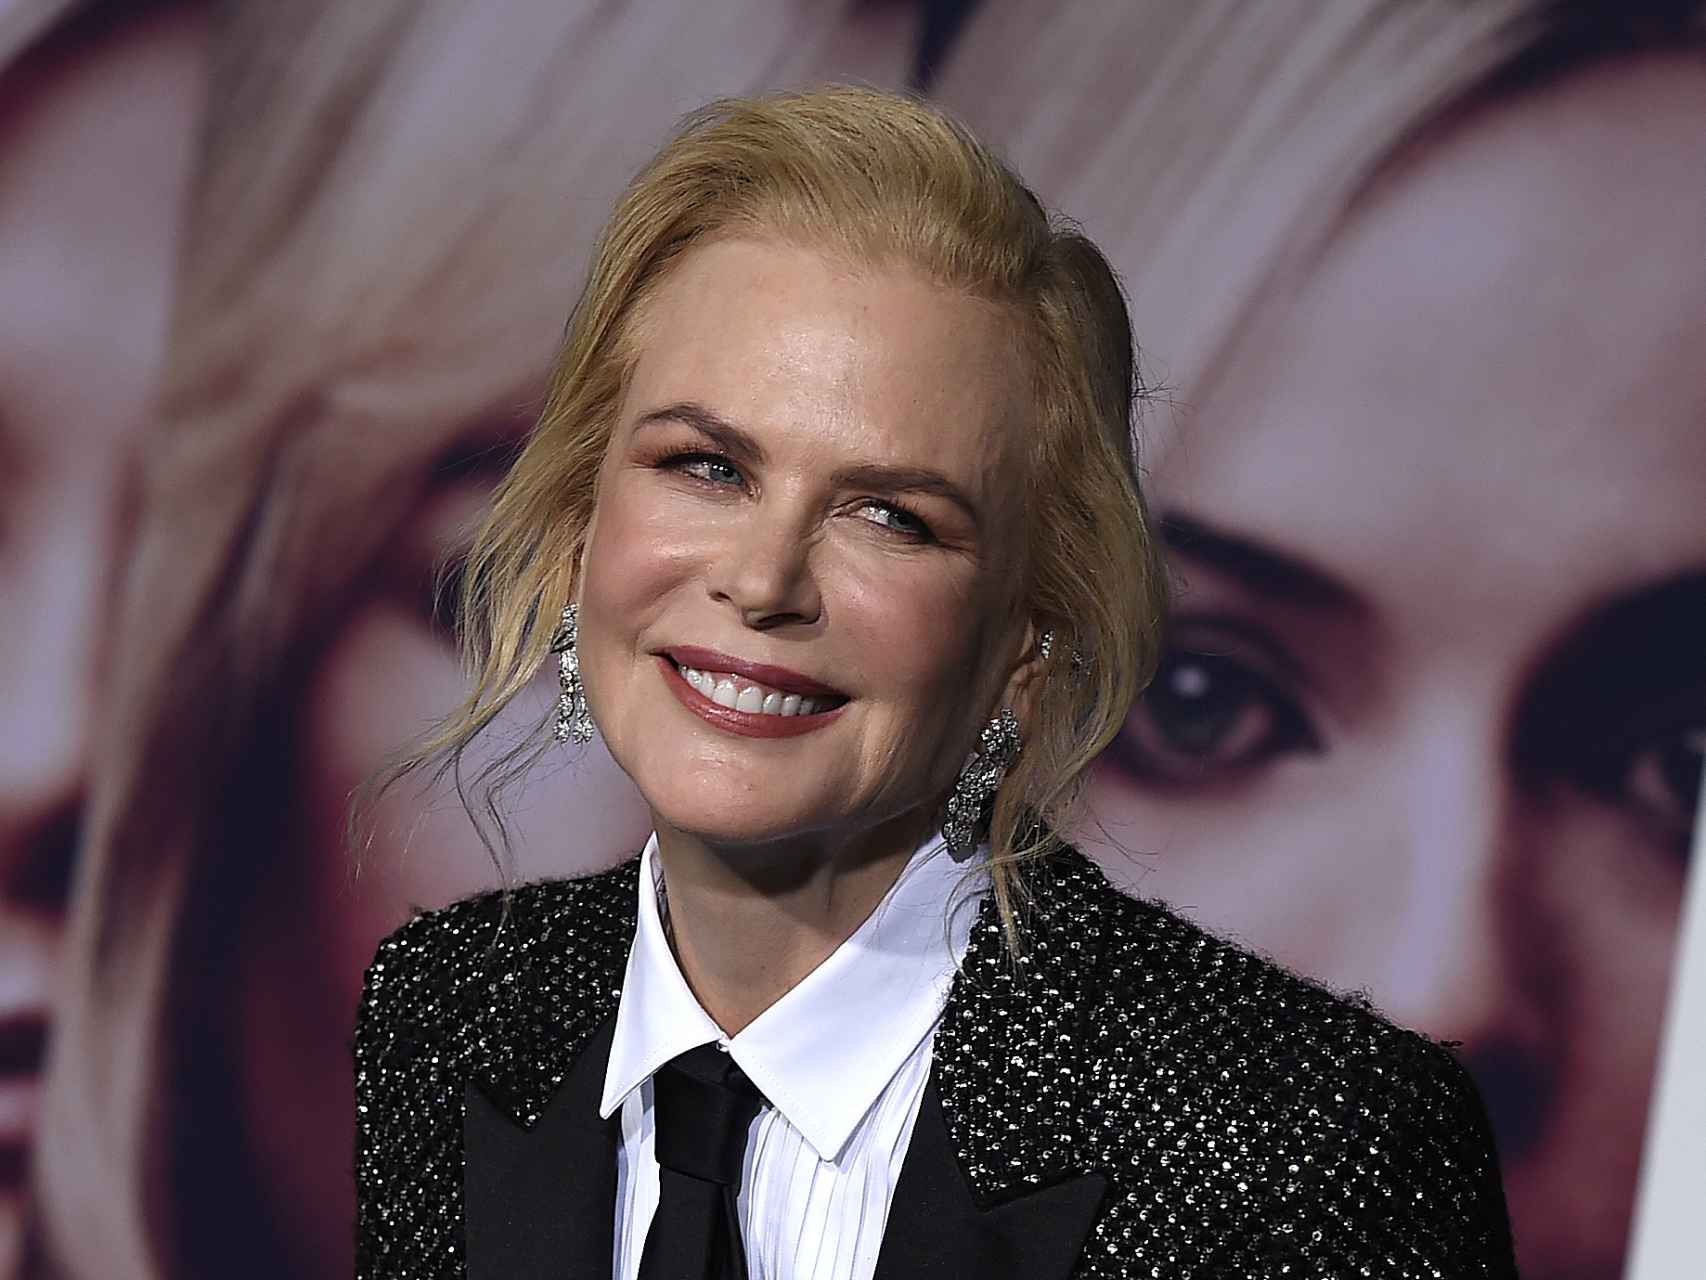 El rostro de Nicole Kidman en su último evento muestra multitud de retoques.